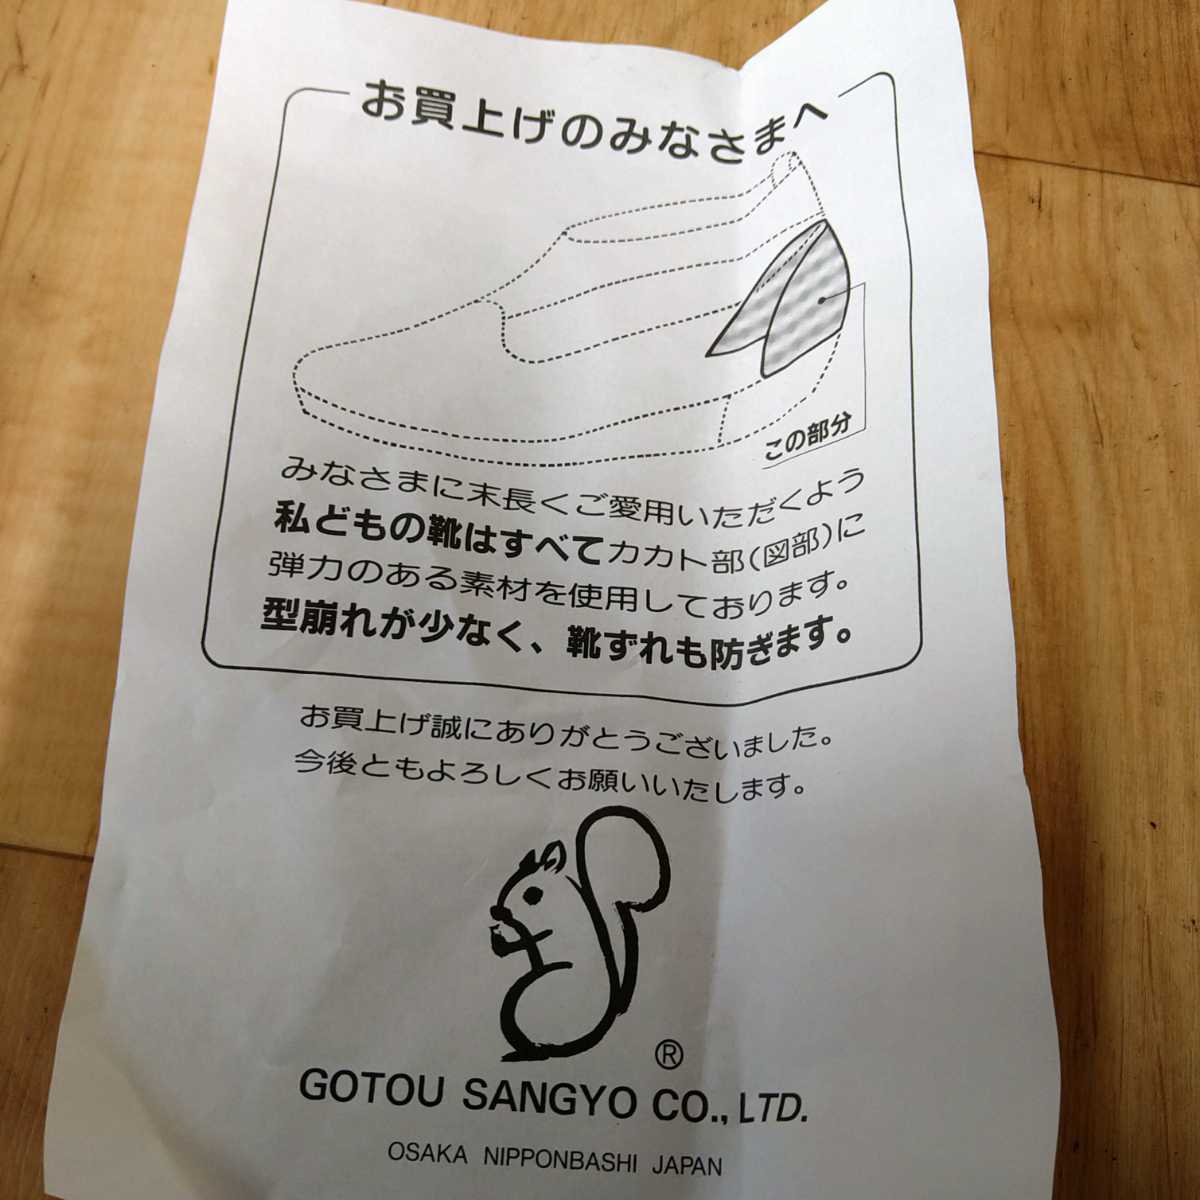 3152 стоимость доставки 520 иен не использовался сделано в Японии 24.5cm Heart узор. модный туфли-лодочки каблук туфли-лодочки GOTOU SANGYOU party шт .. костюмированная игра тоже 